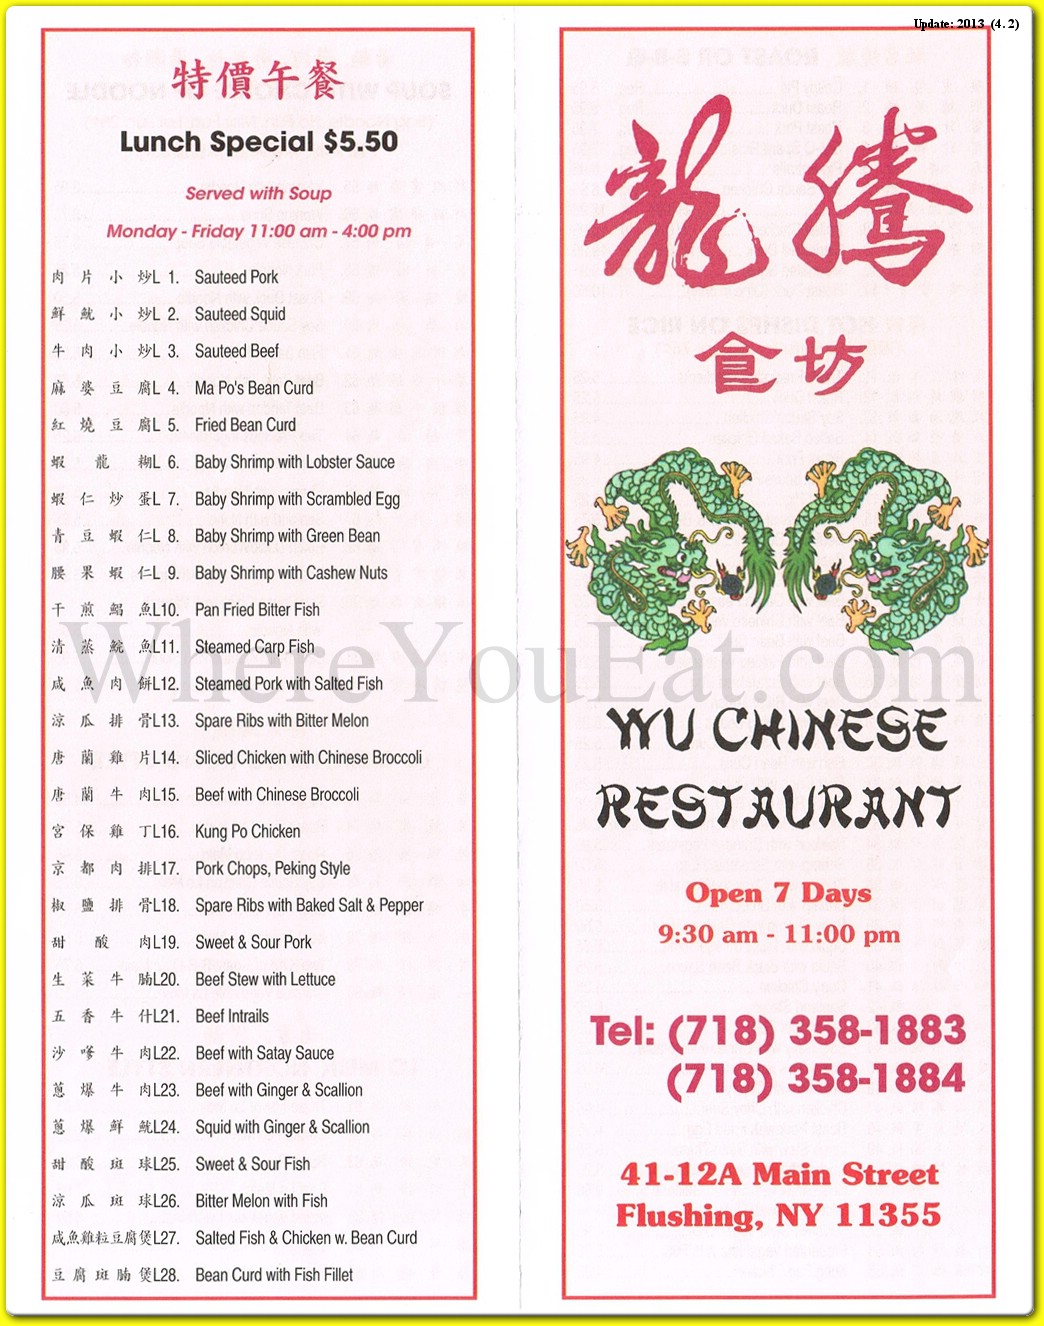 Wu Chinese Restaurant